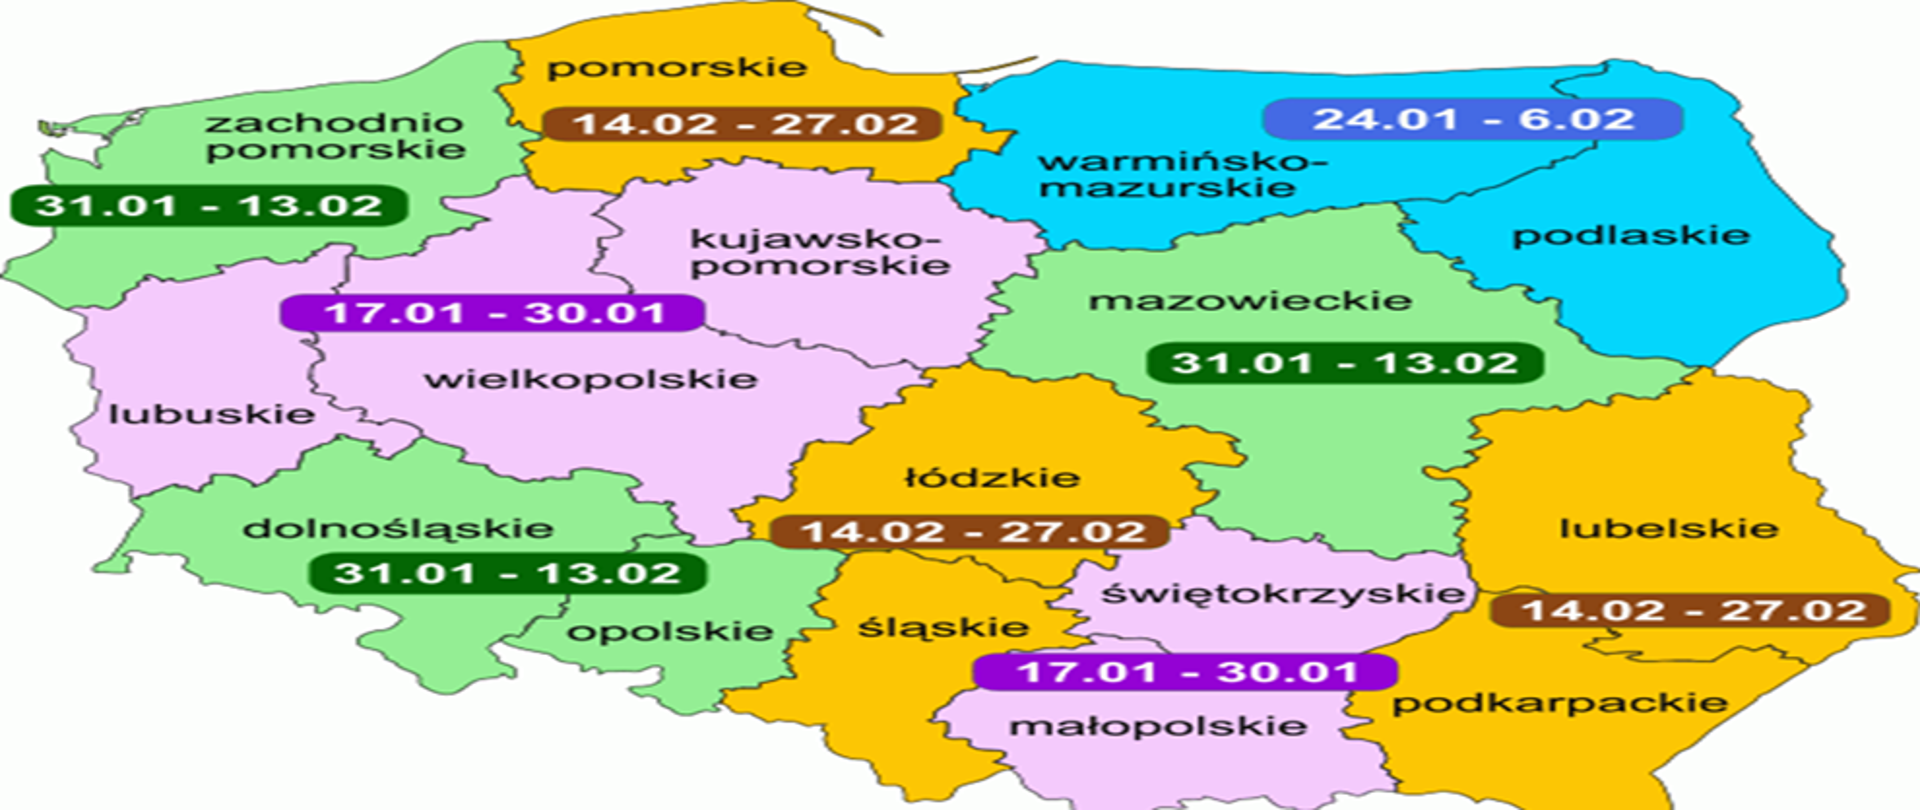 Na tle mapy Polski w konturach wszystkich województw wpisano termin ferii zimowych 2022